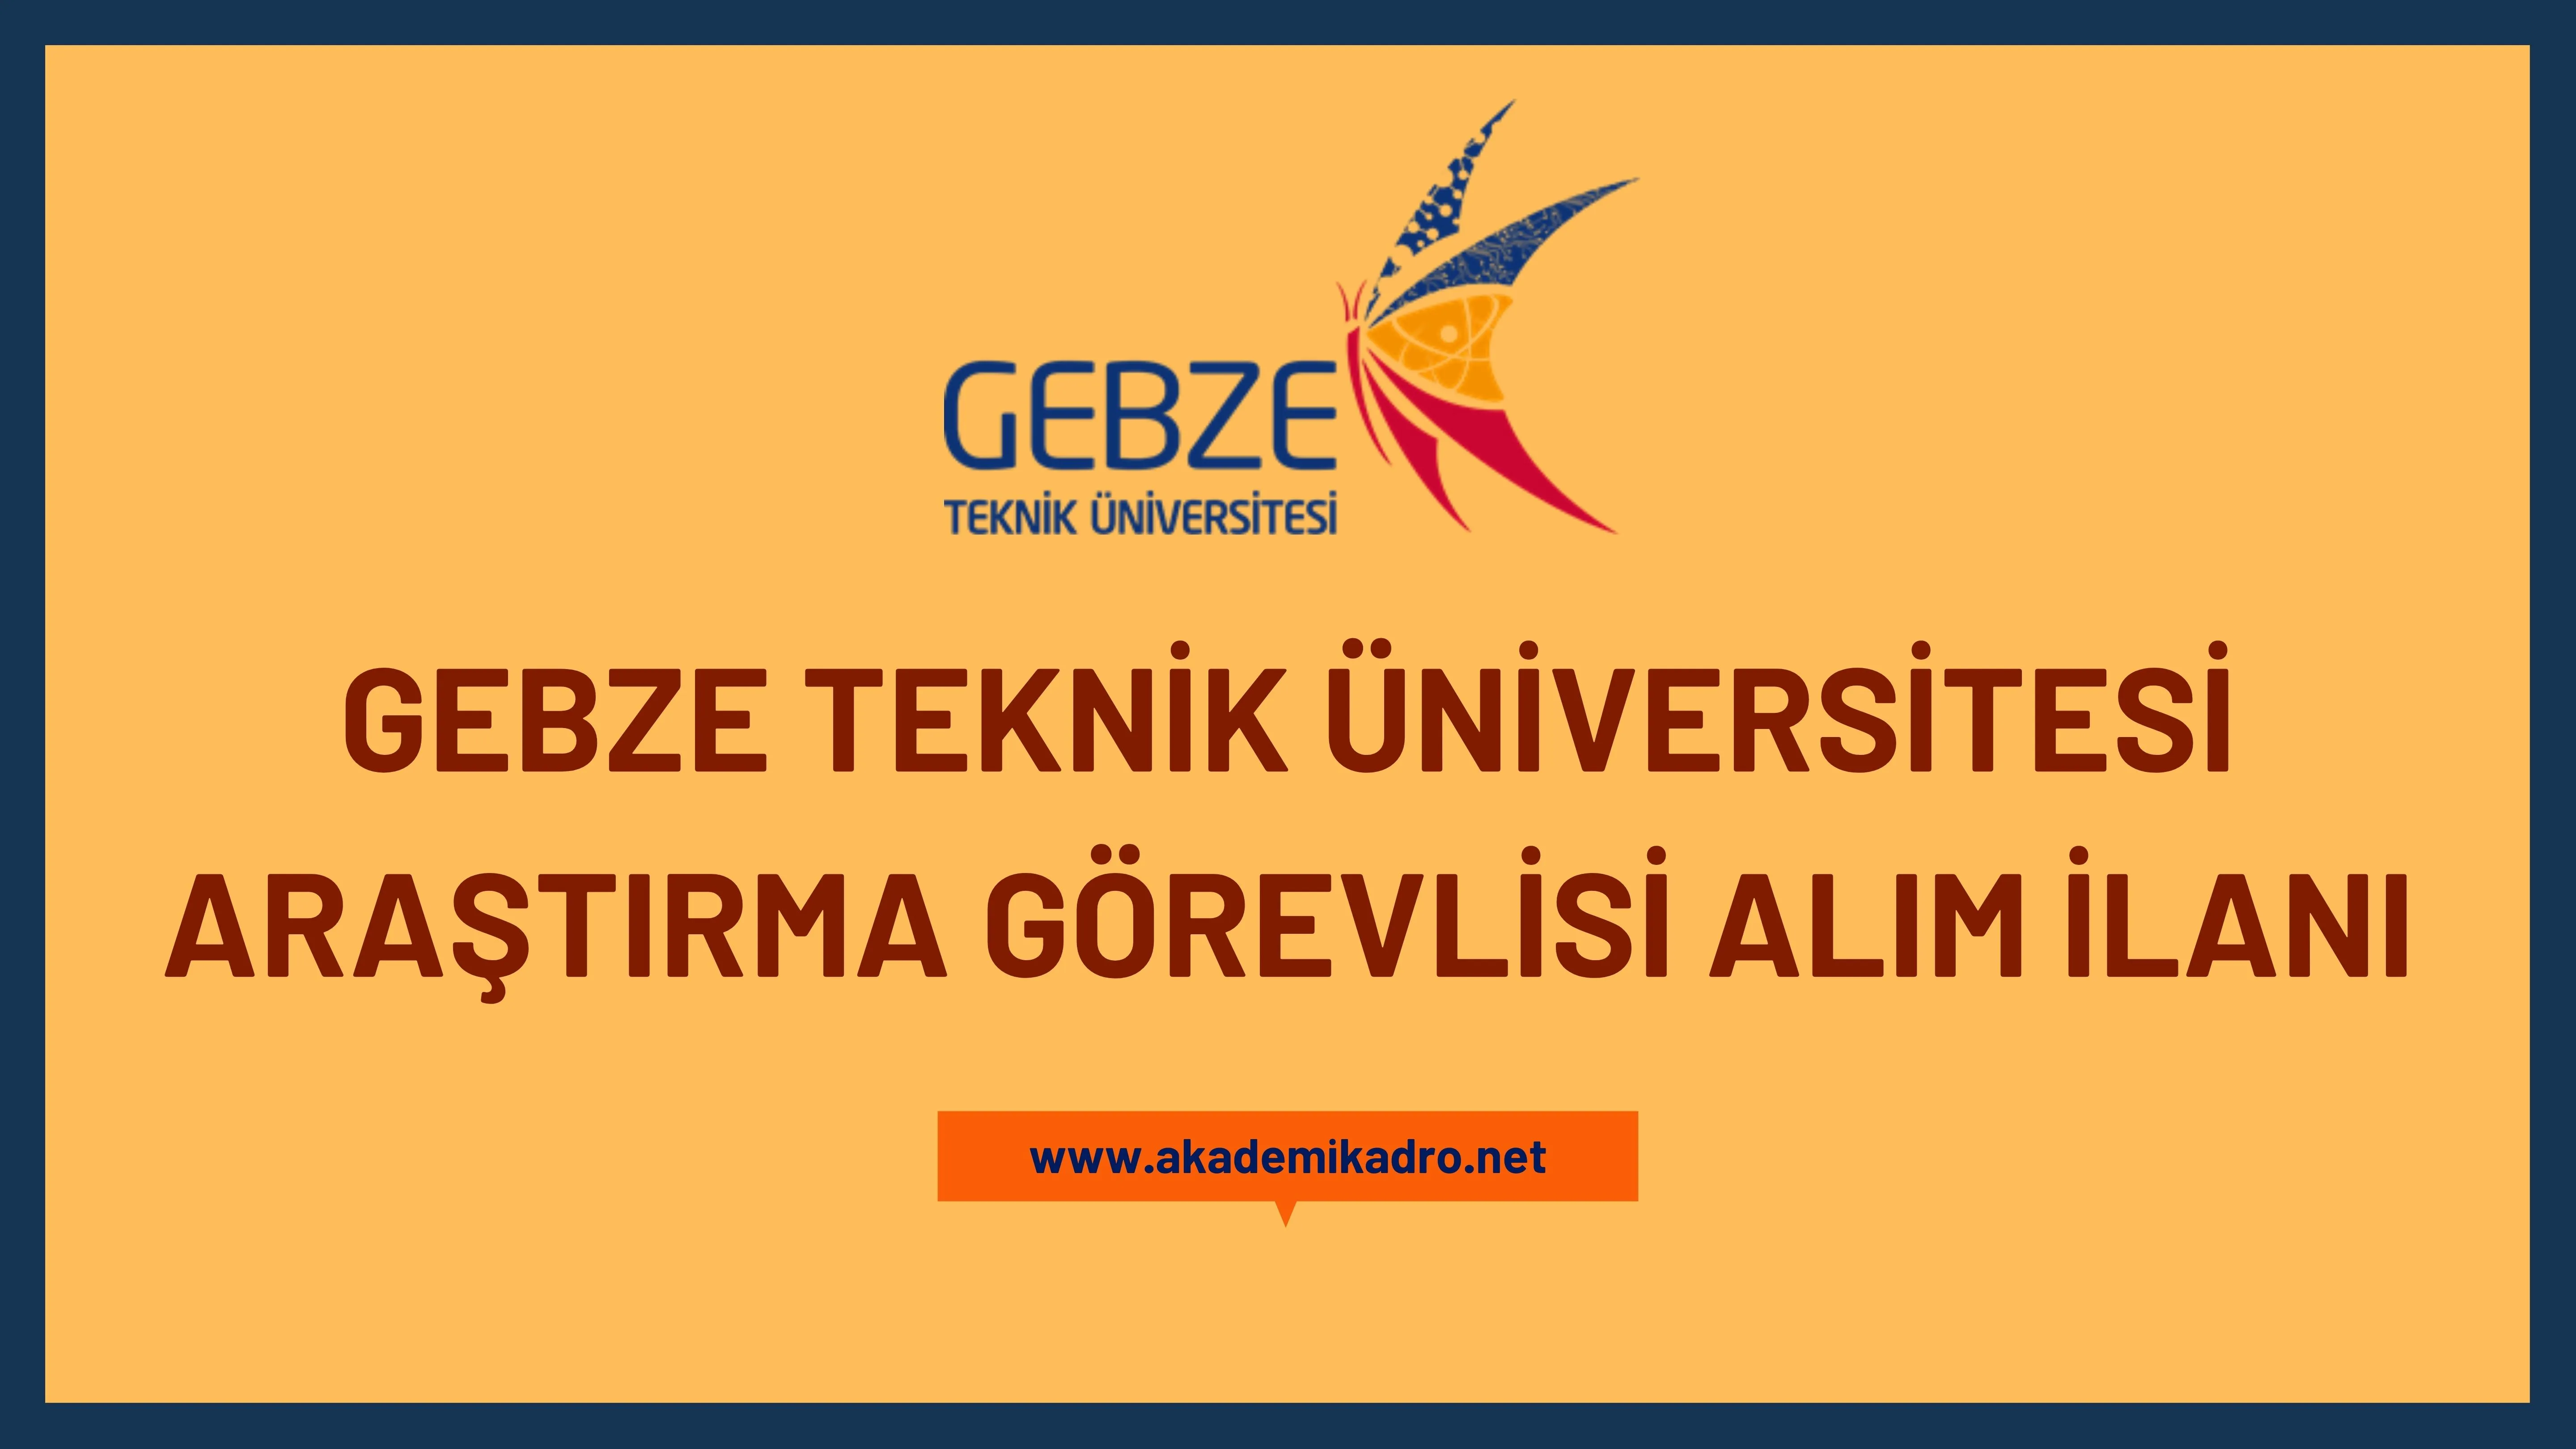 Gebze Teknik Üniversitesi 25 Araştırma görevlisi ve 3 öğretim görevlisi olmak üzere 28 öğretim elemanı alacaktır.